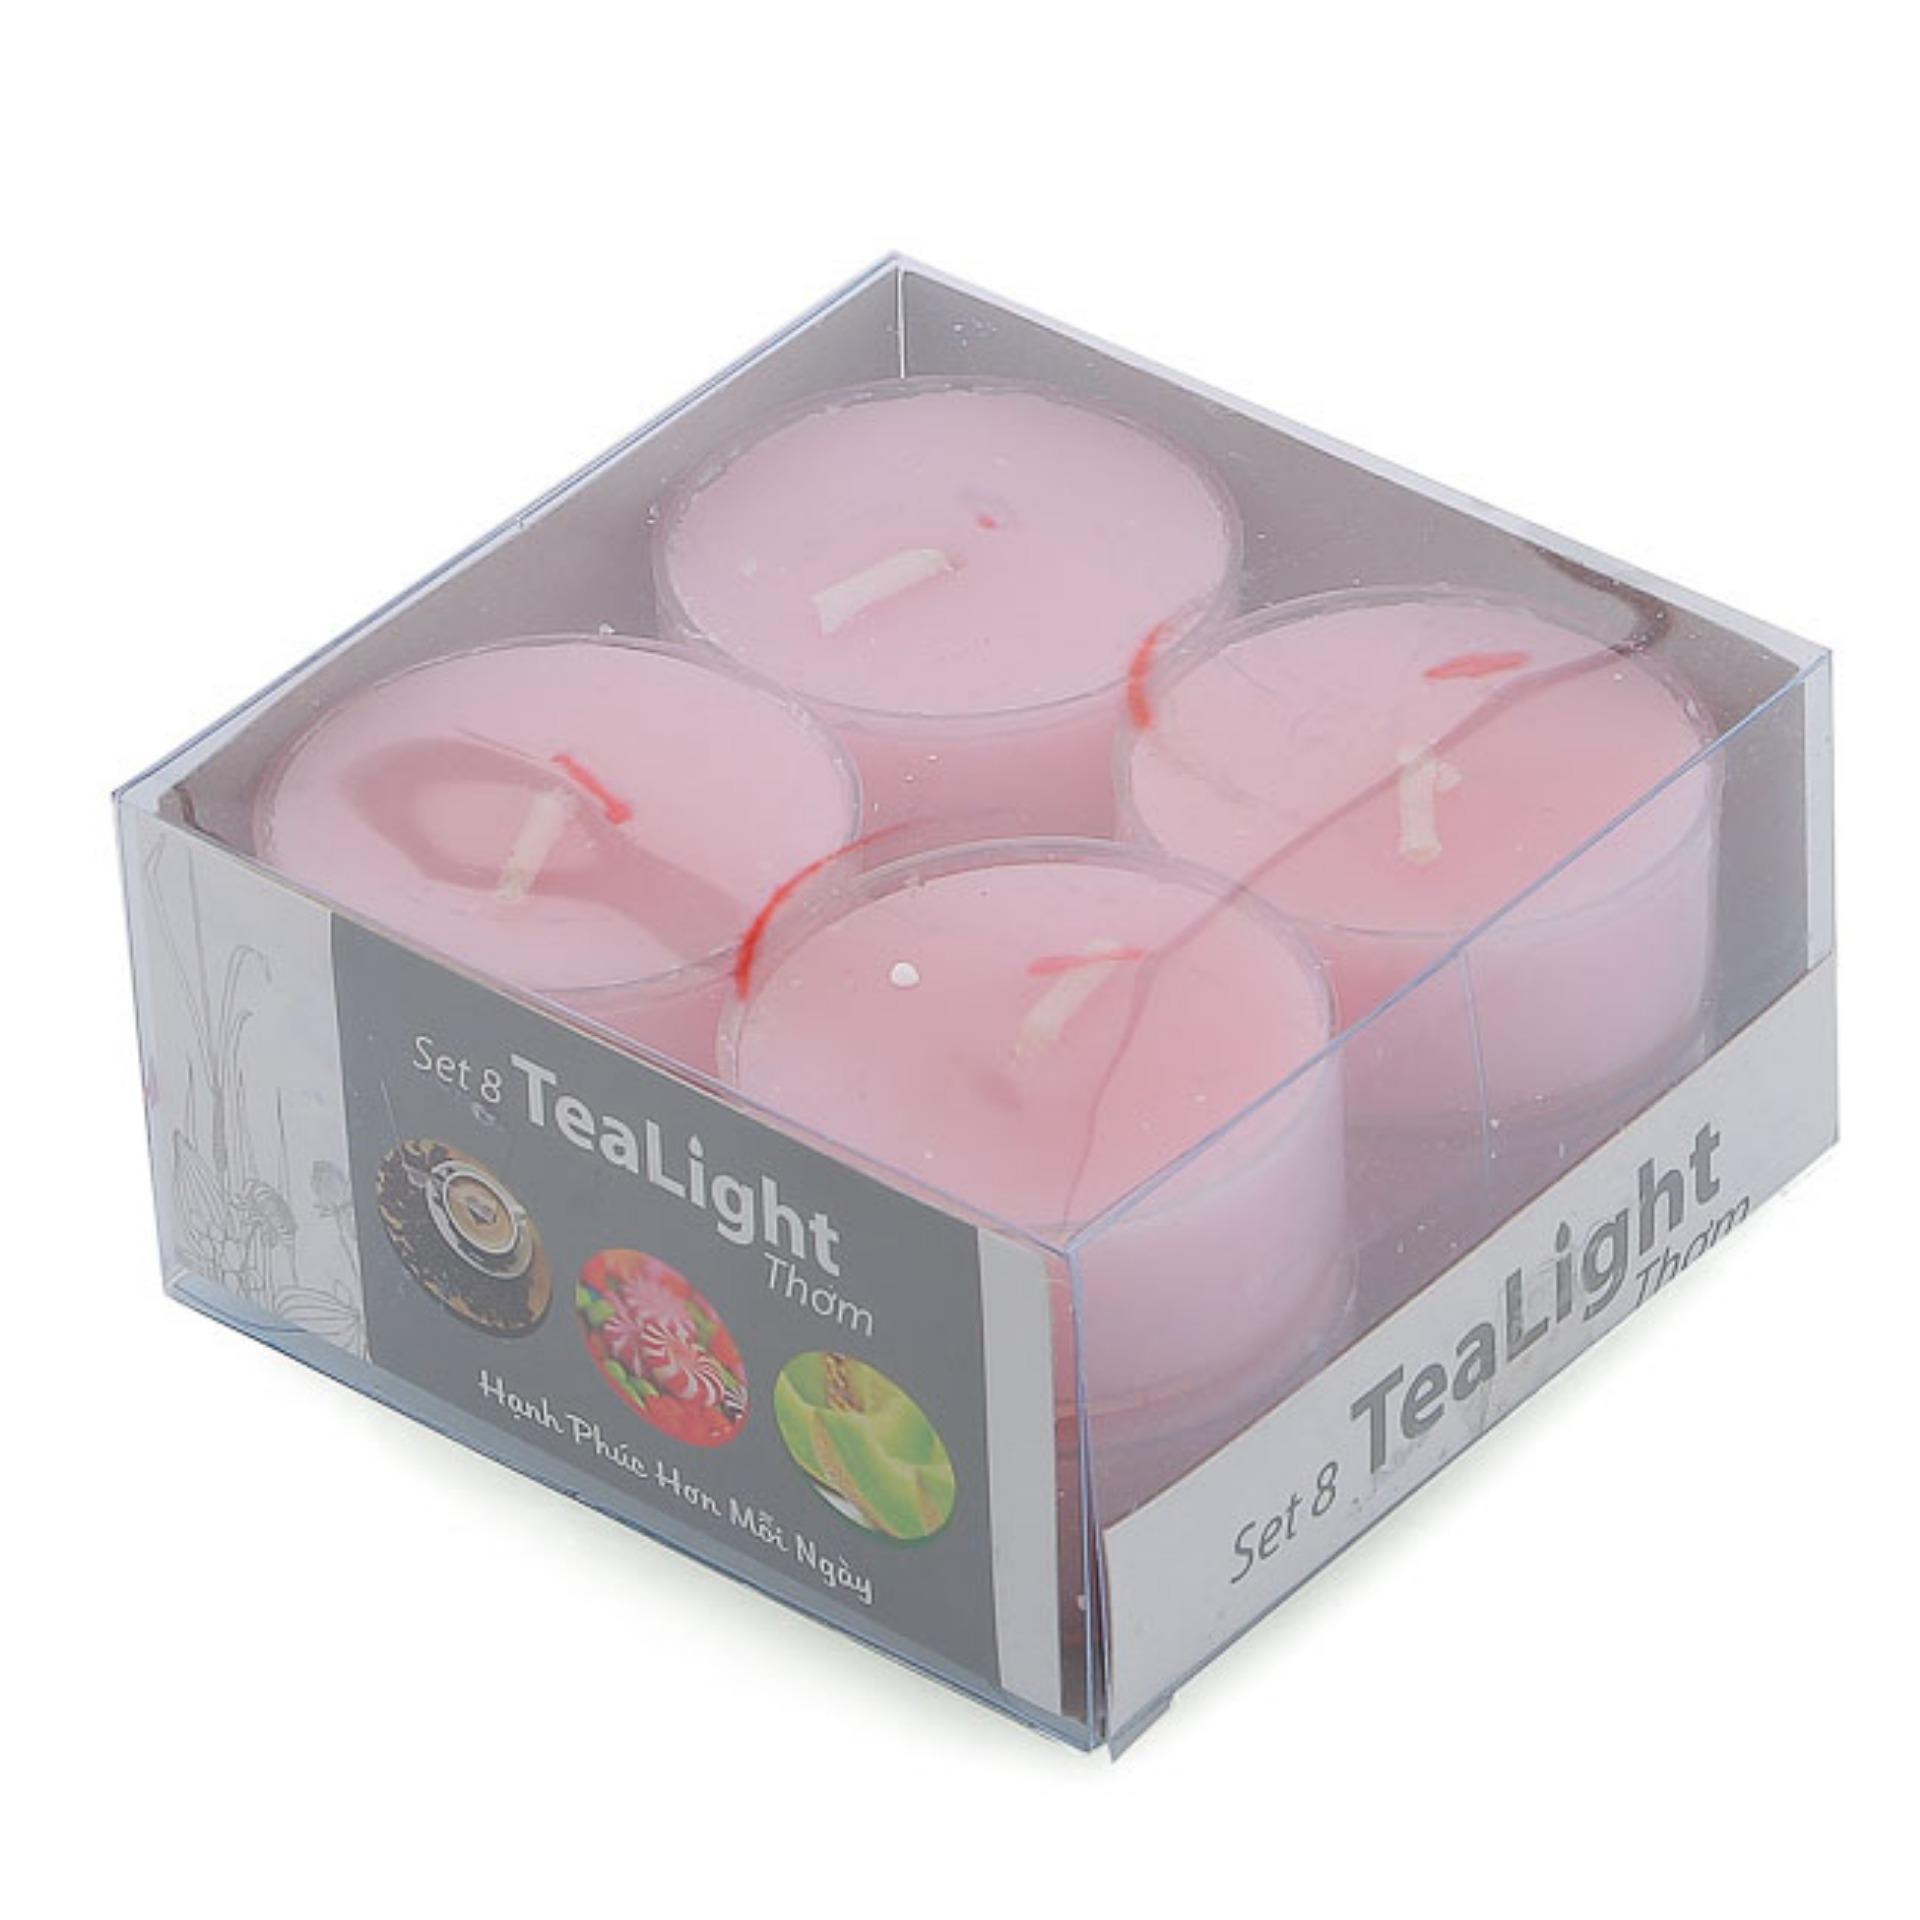 Hộp 8 nến tealight thơm đế nhựa Miss Candle NQM2059 (Hồng, hương hoa anh đào)